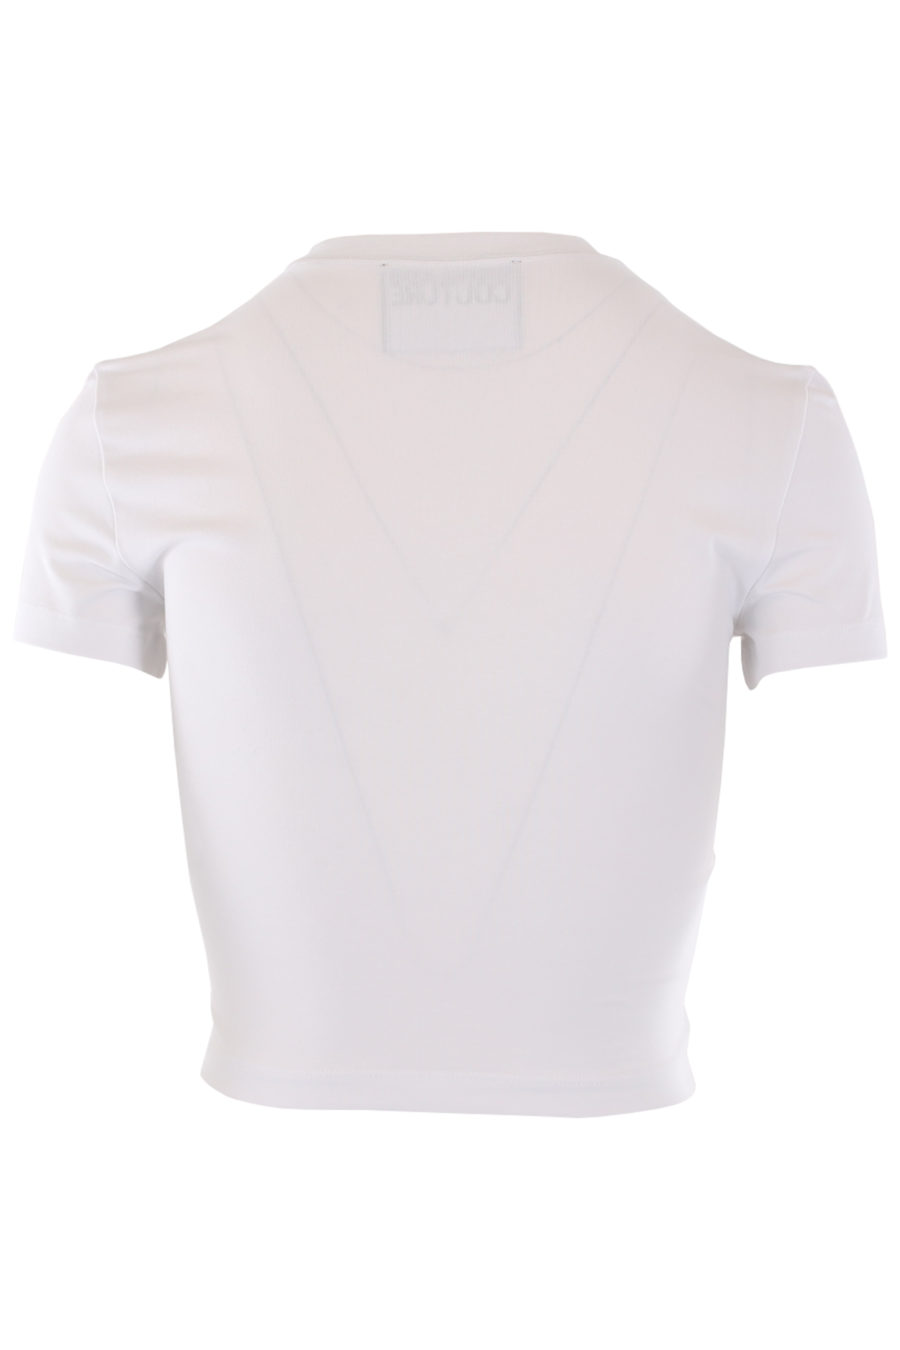 Weißes T-Shirt mit lila schillerndem Logo - IMG 0764